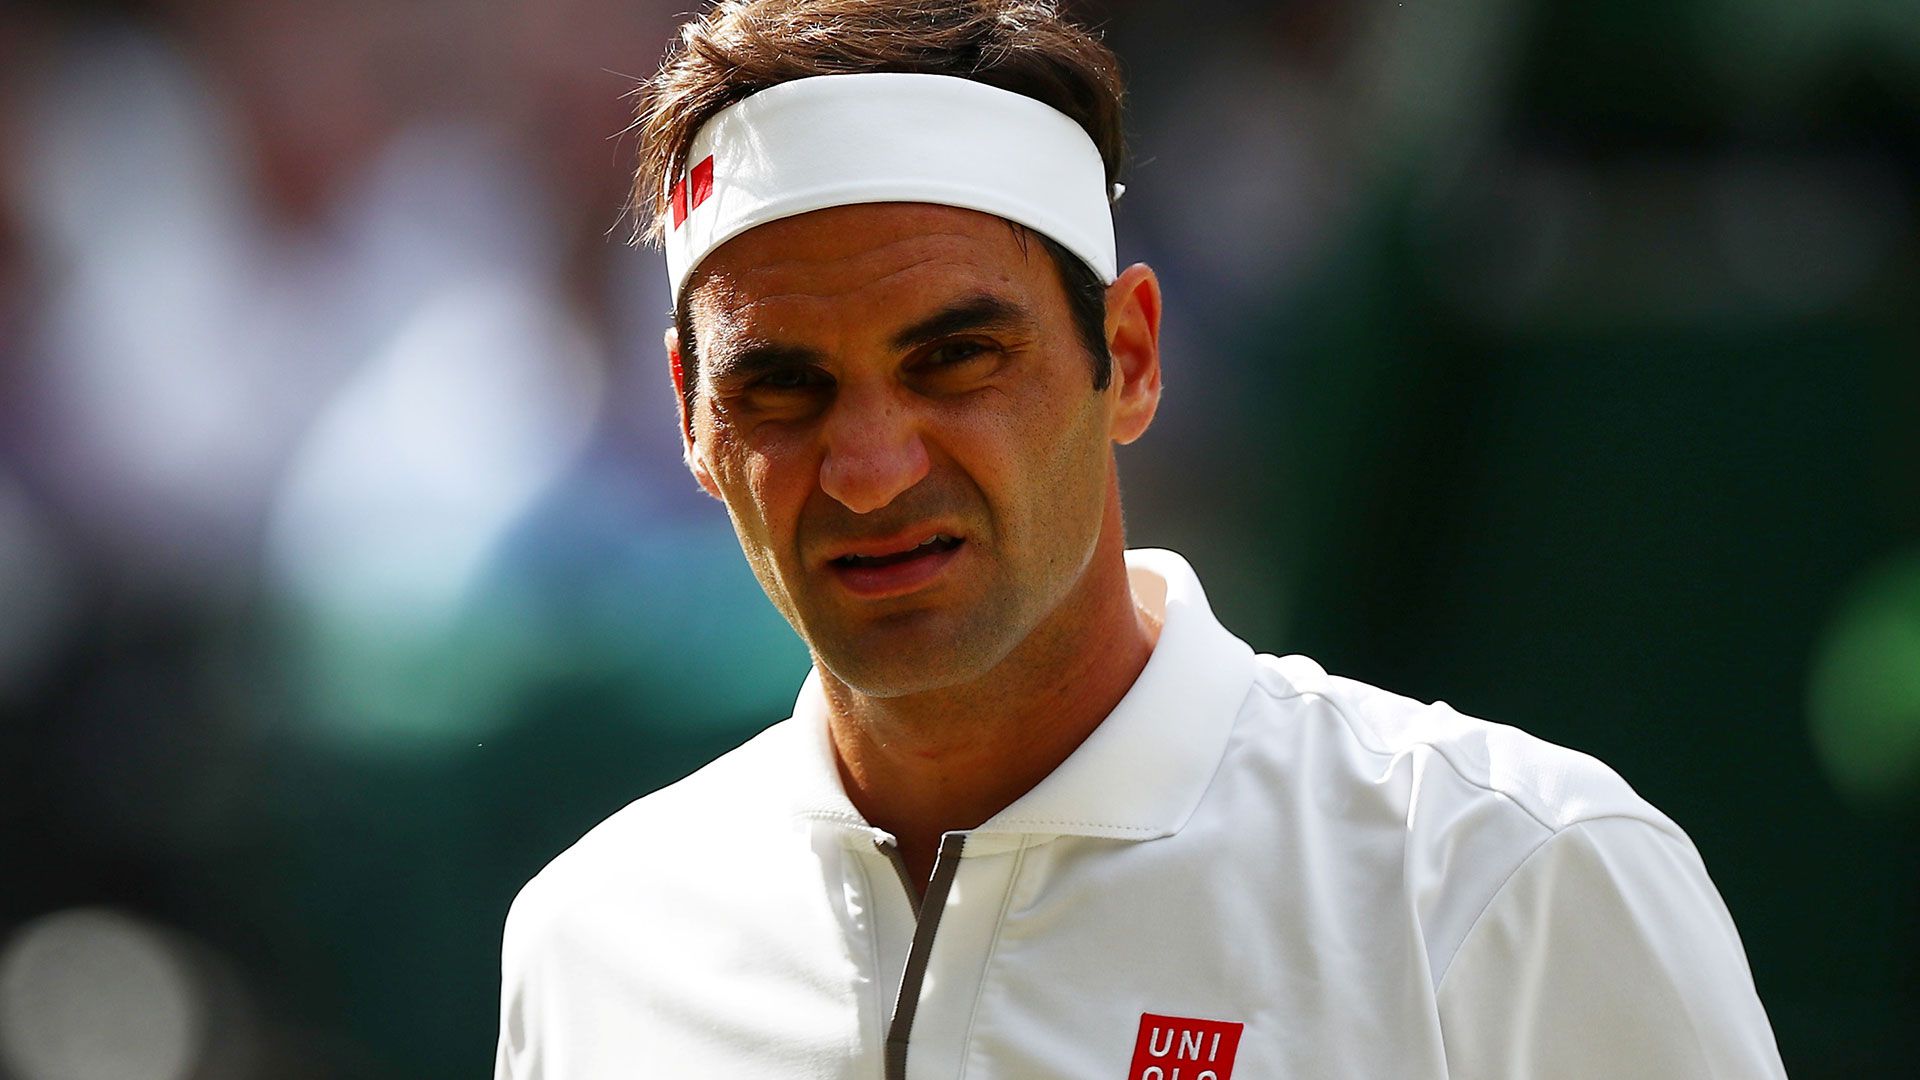 El suizo quiere su 21° título de Grand Slam (Reuters)